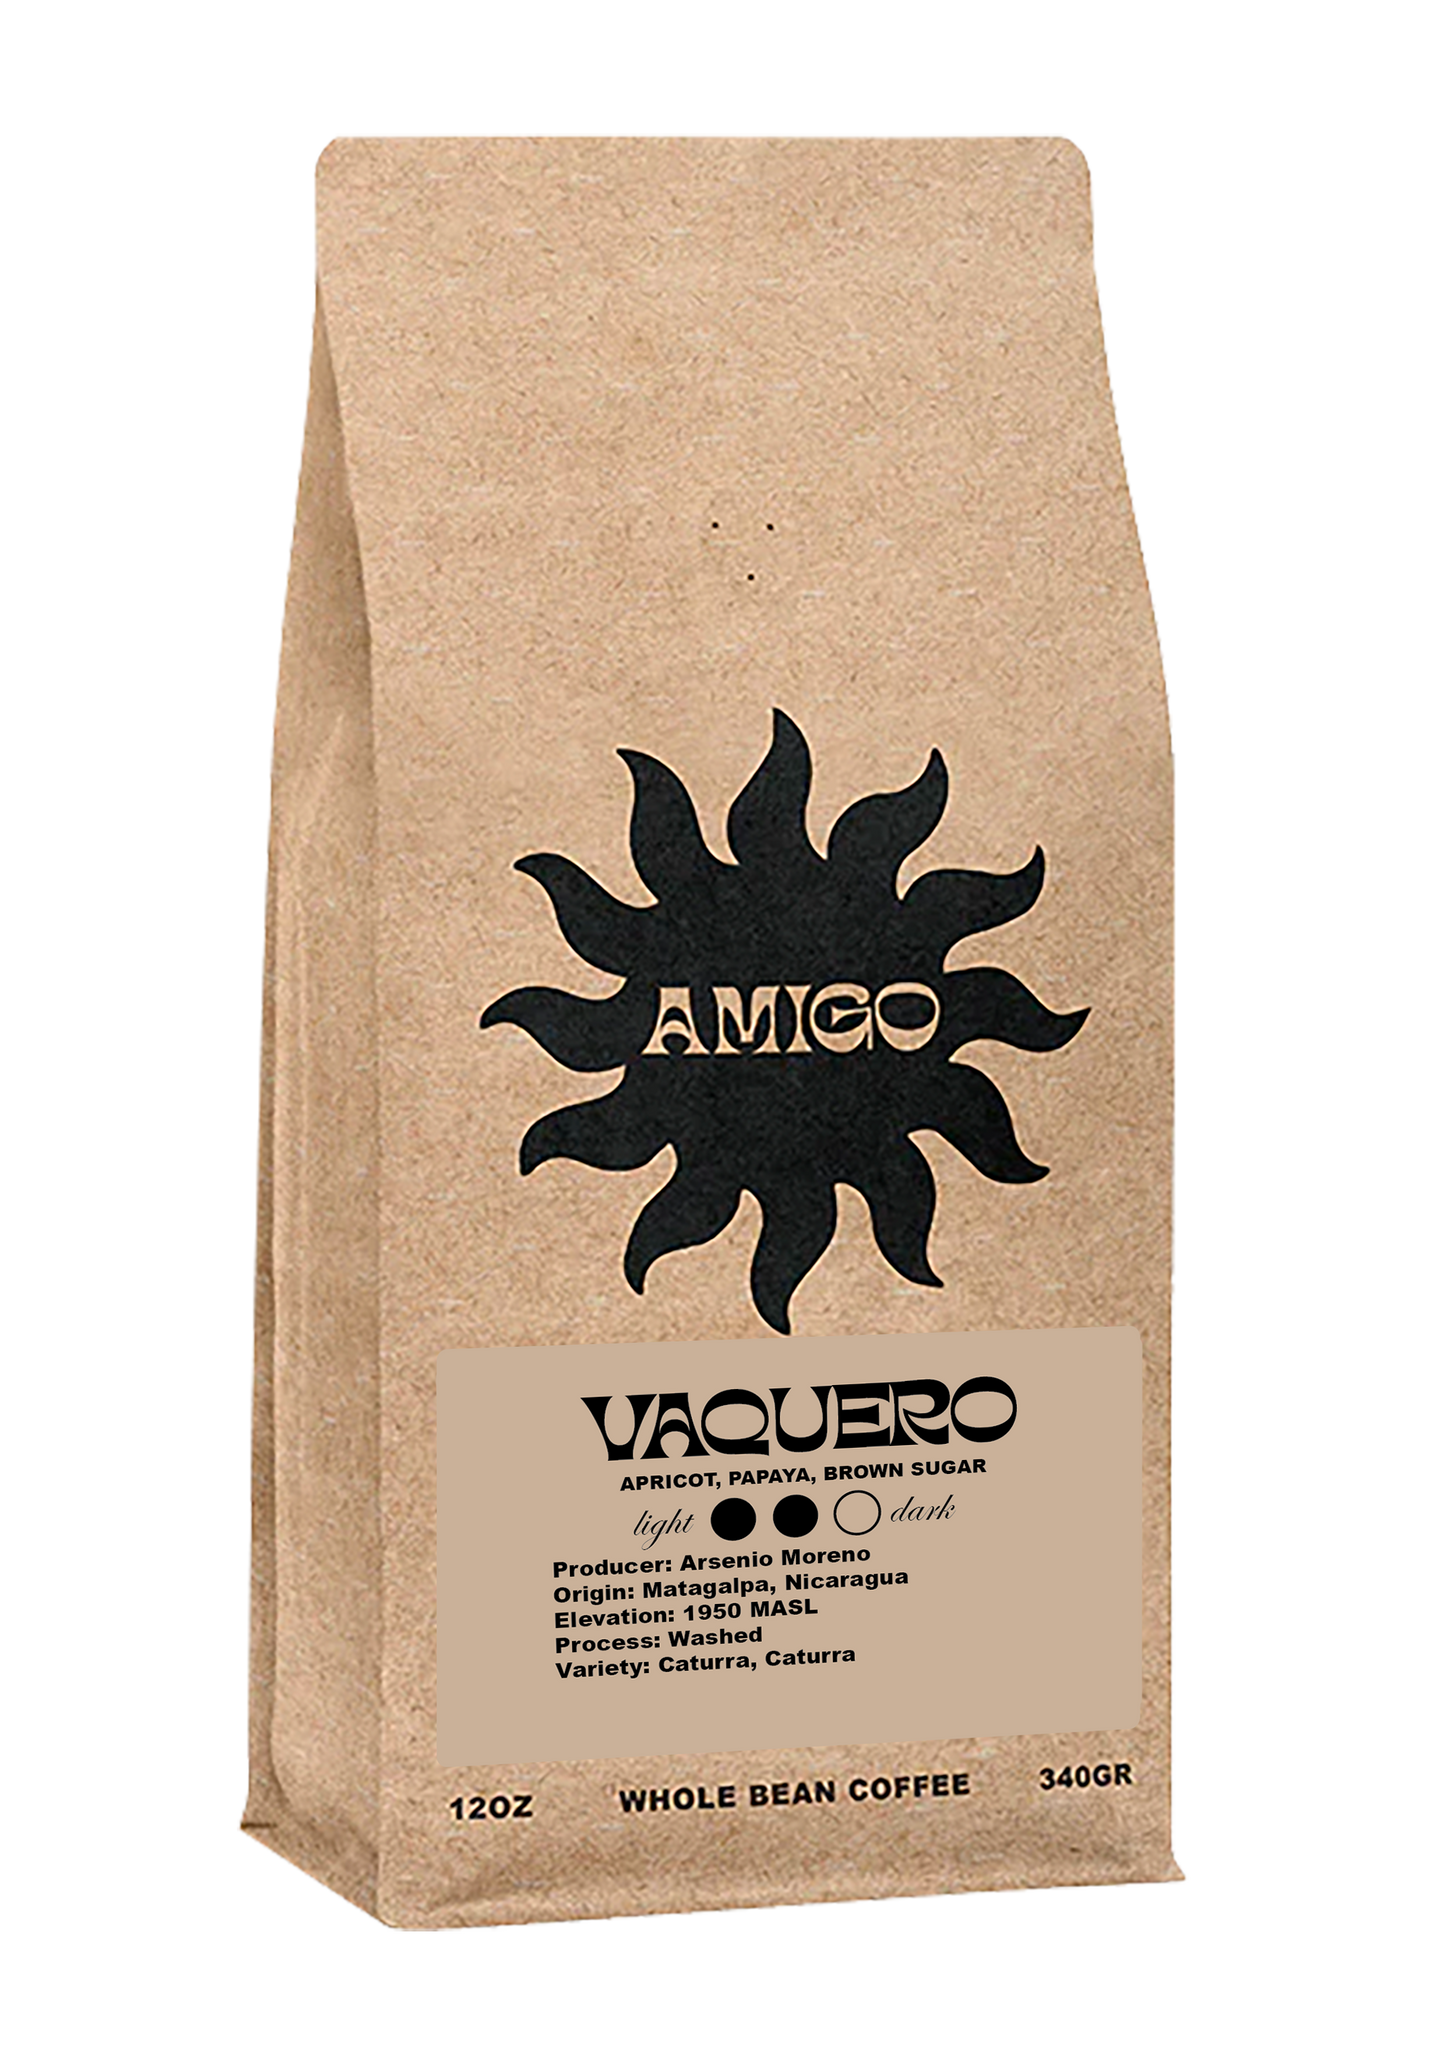 A bag of Vaquero coffee beans